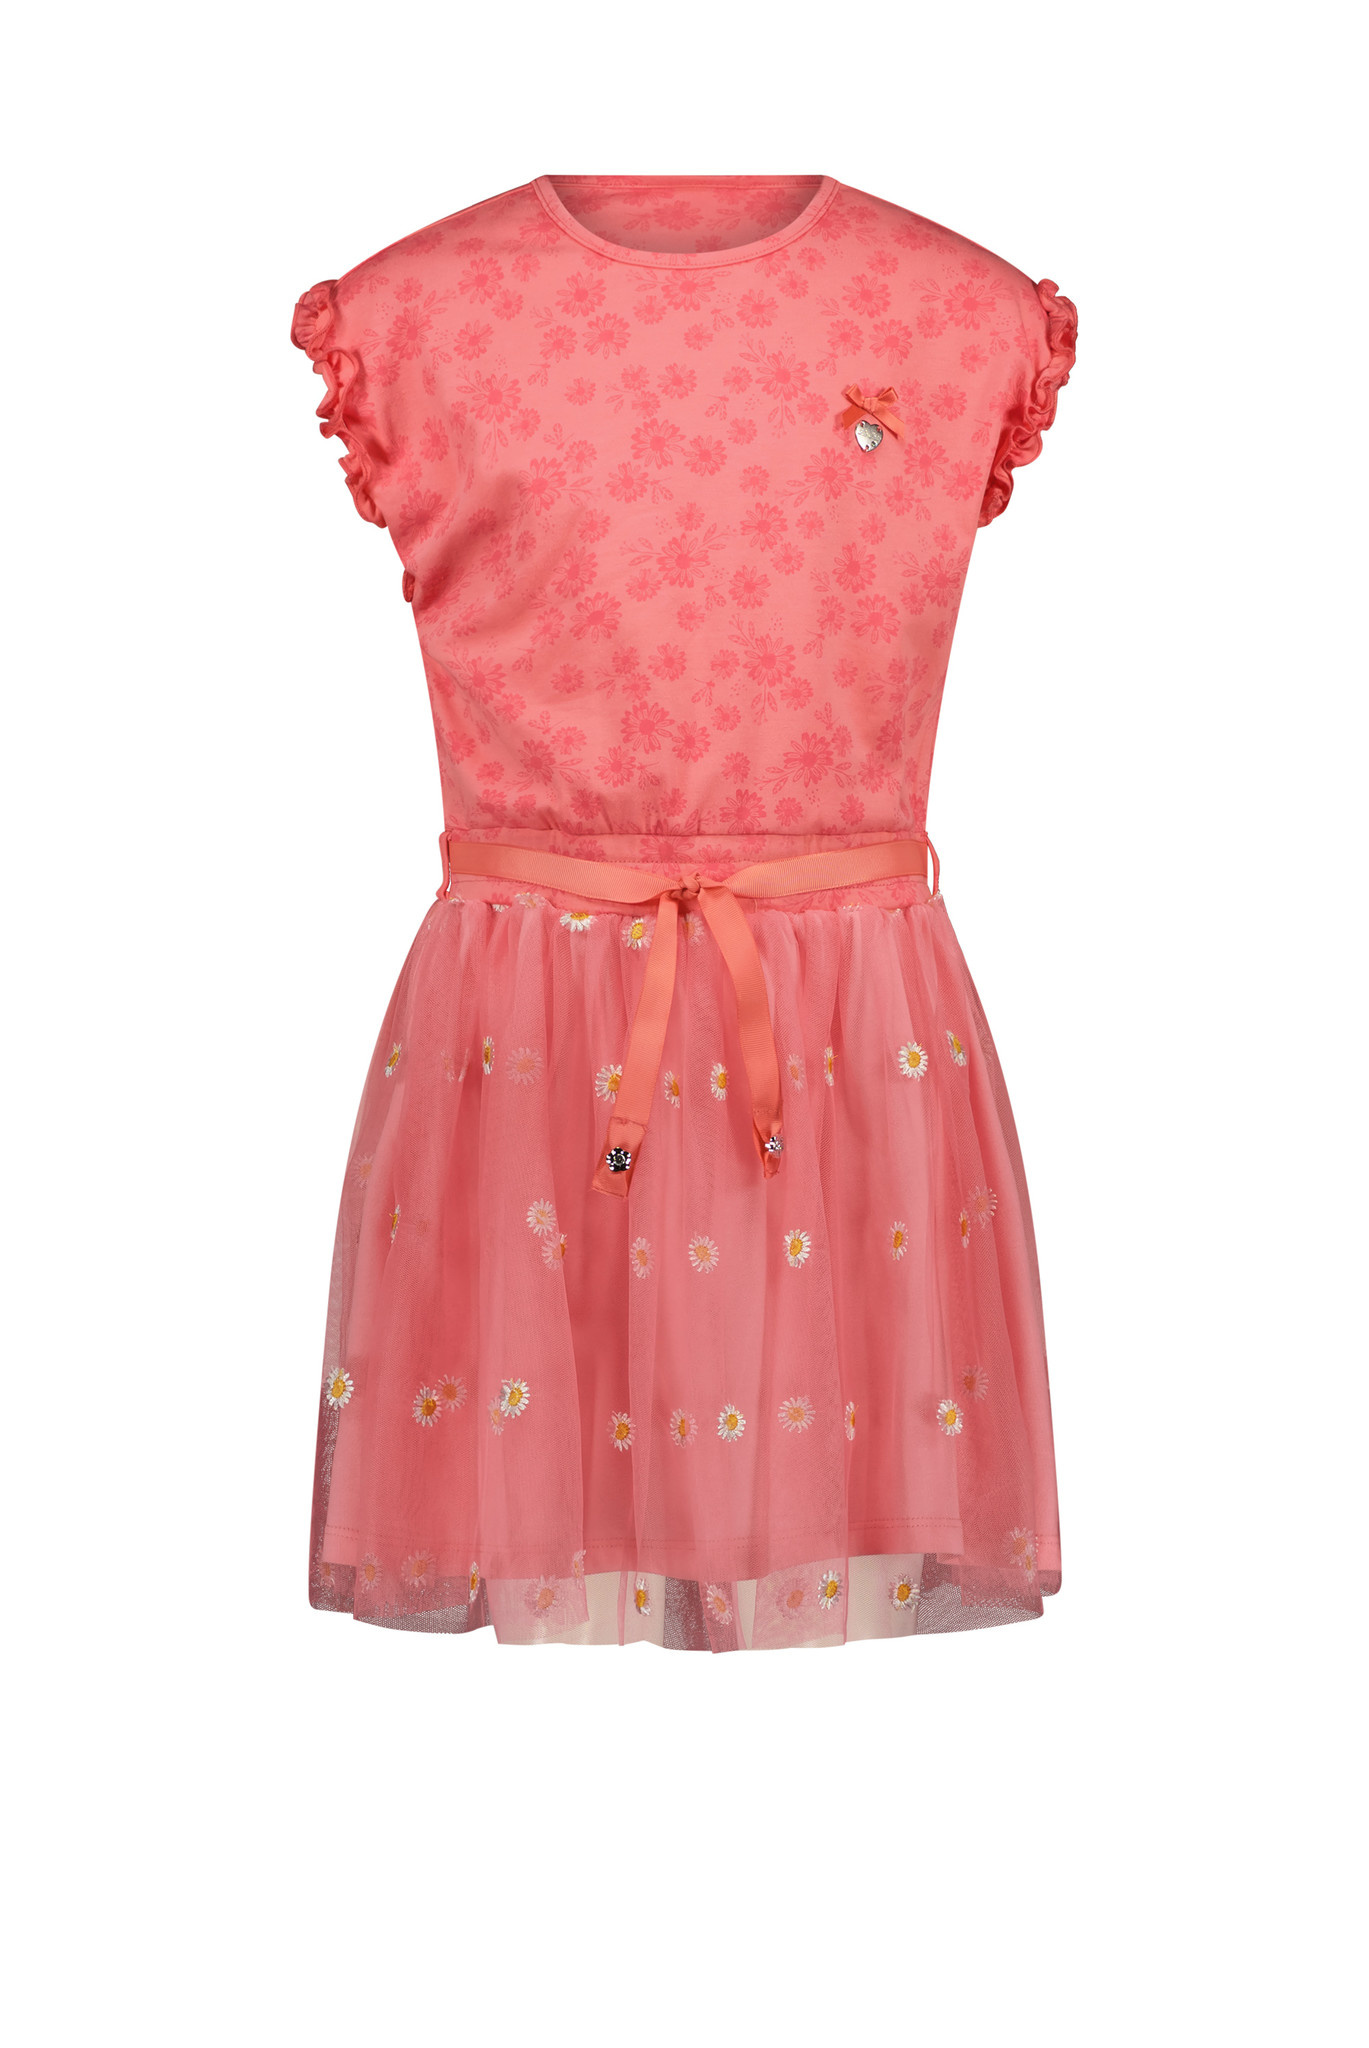 Dempsey Voorzitter overdrijving Le Chic - Meisjes jurk - Squid - Tea roze - merkmeisjeskleding.nl